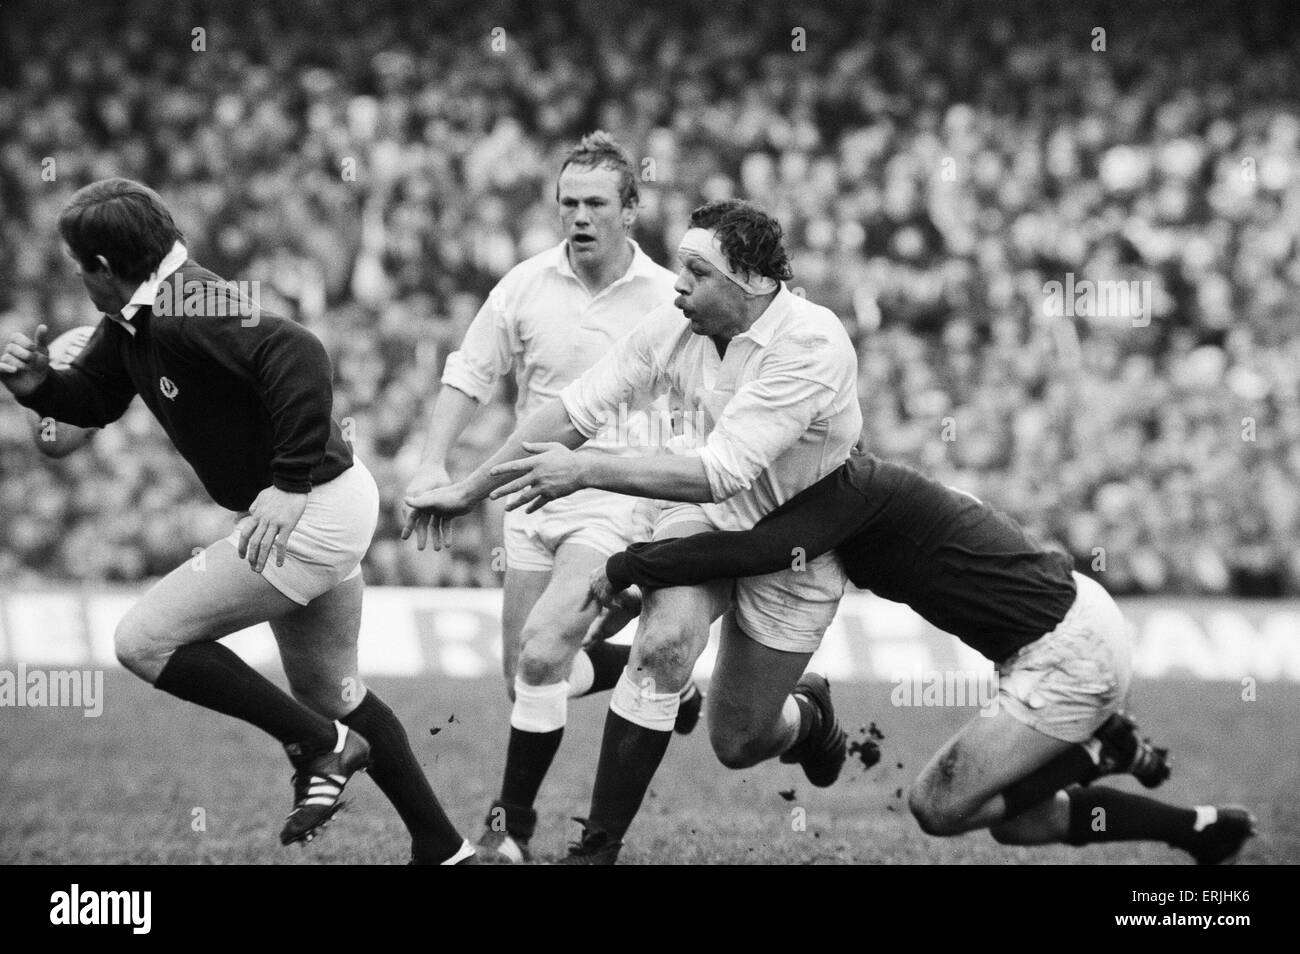 Il Rugby 5 Nazioni partita internazionale a Twickenham. Inghilterra 23 v Scozia 17. Azione durante il match che coinvolgono l'Inghilterra del Bill Beaumont. Il 21 febbraio 1981. Foto Stock